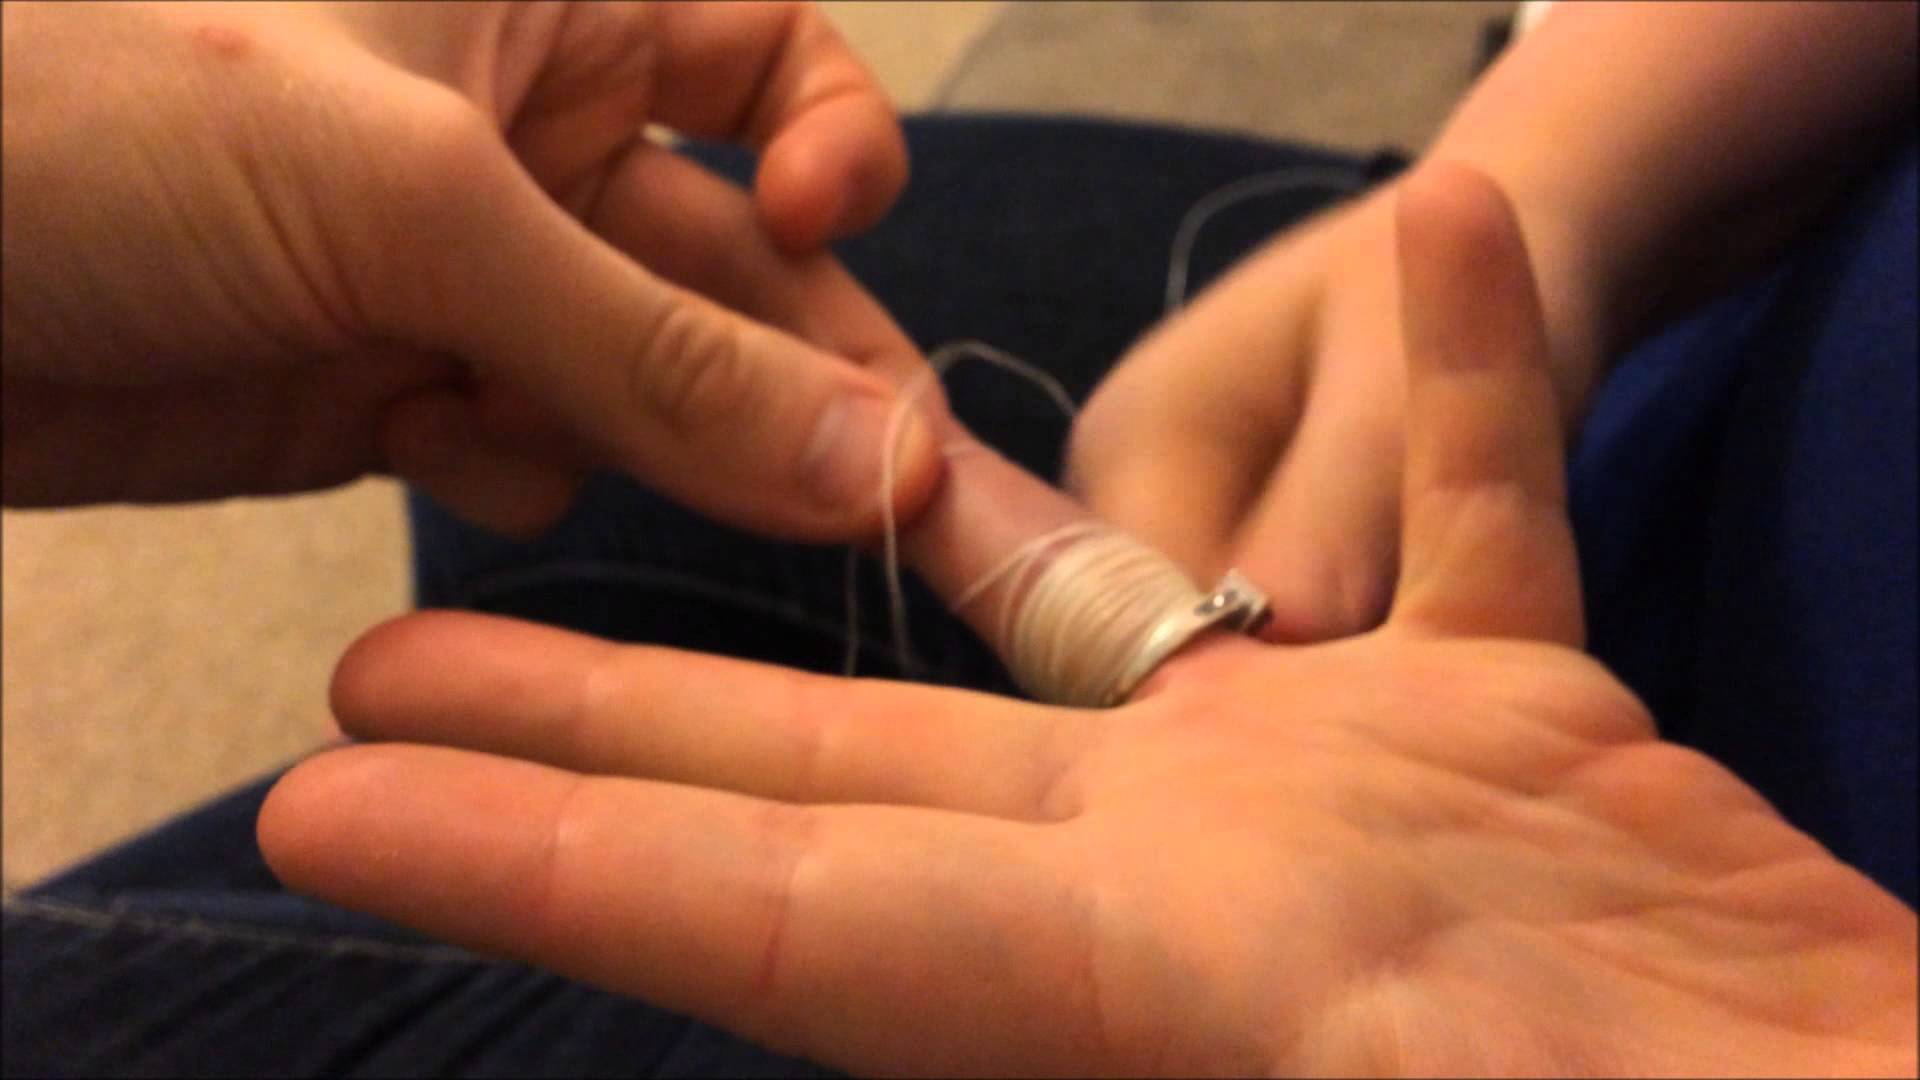 Как снять кольцо с опухшего пальца видео. Как снять кольцо с пальца. Снять кольцо ниткой с опухшего пальца. Способы снятия кольца с опухшего пальца. Разрезать кольцо на пальце.